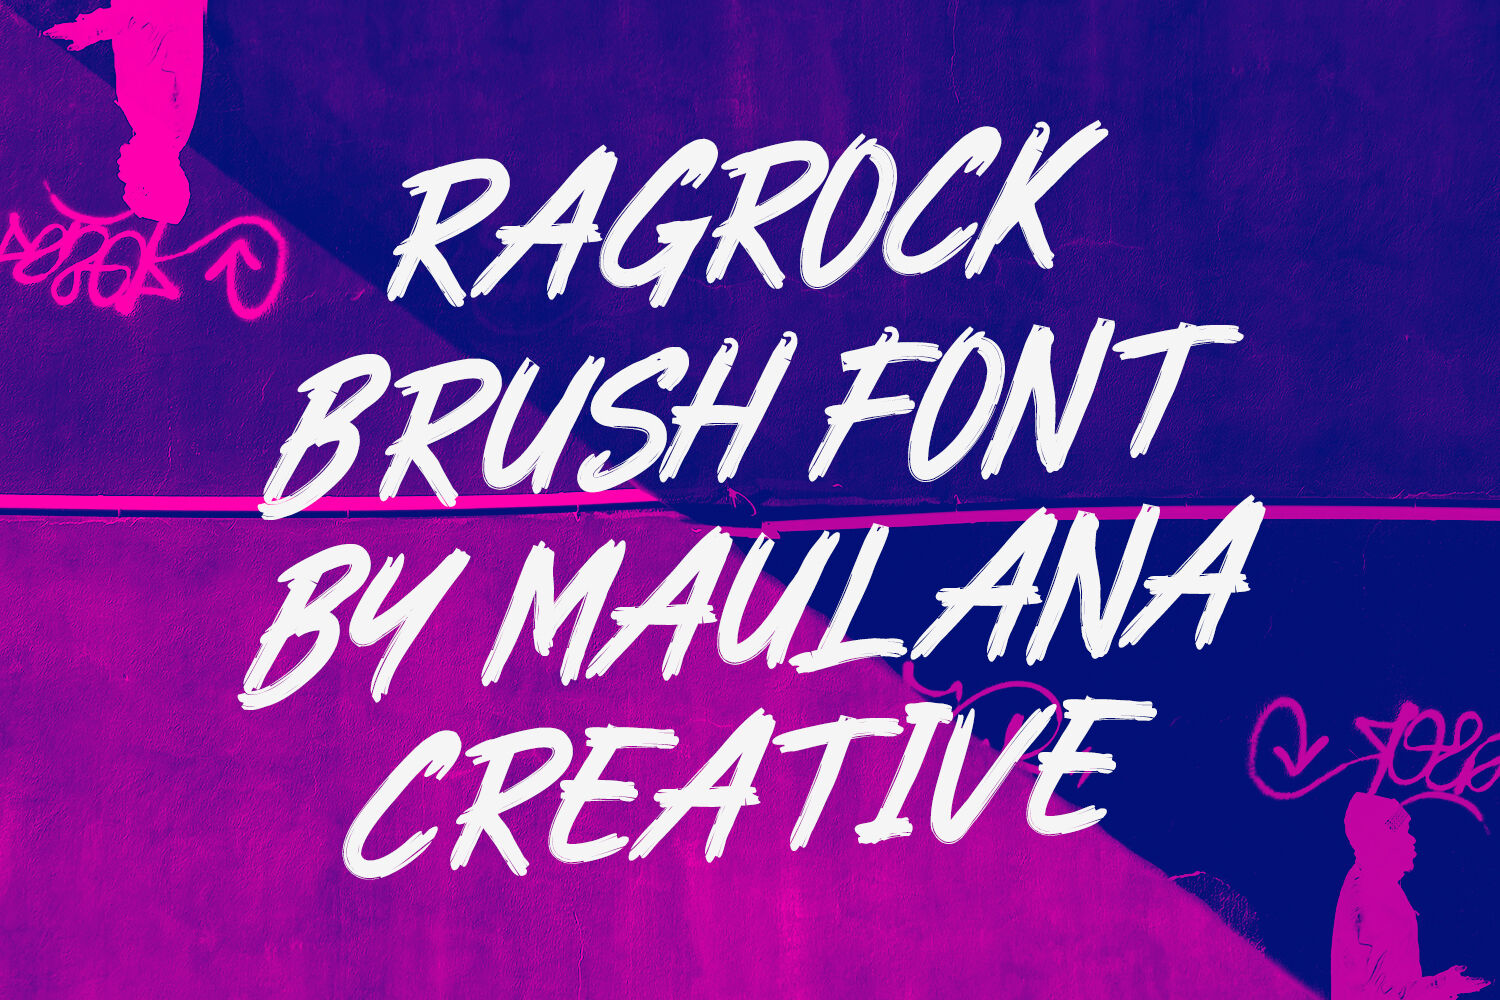 Ragrock Brush Font By Maulana Creative | TheHungryJPEG